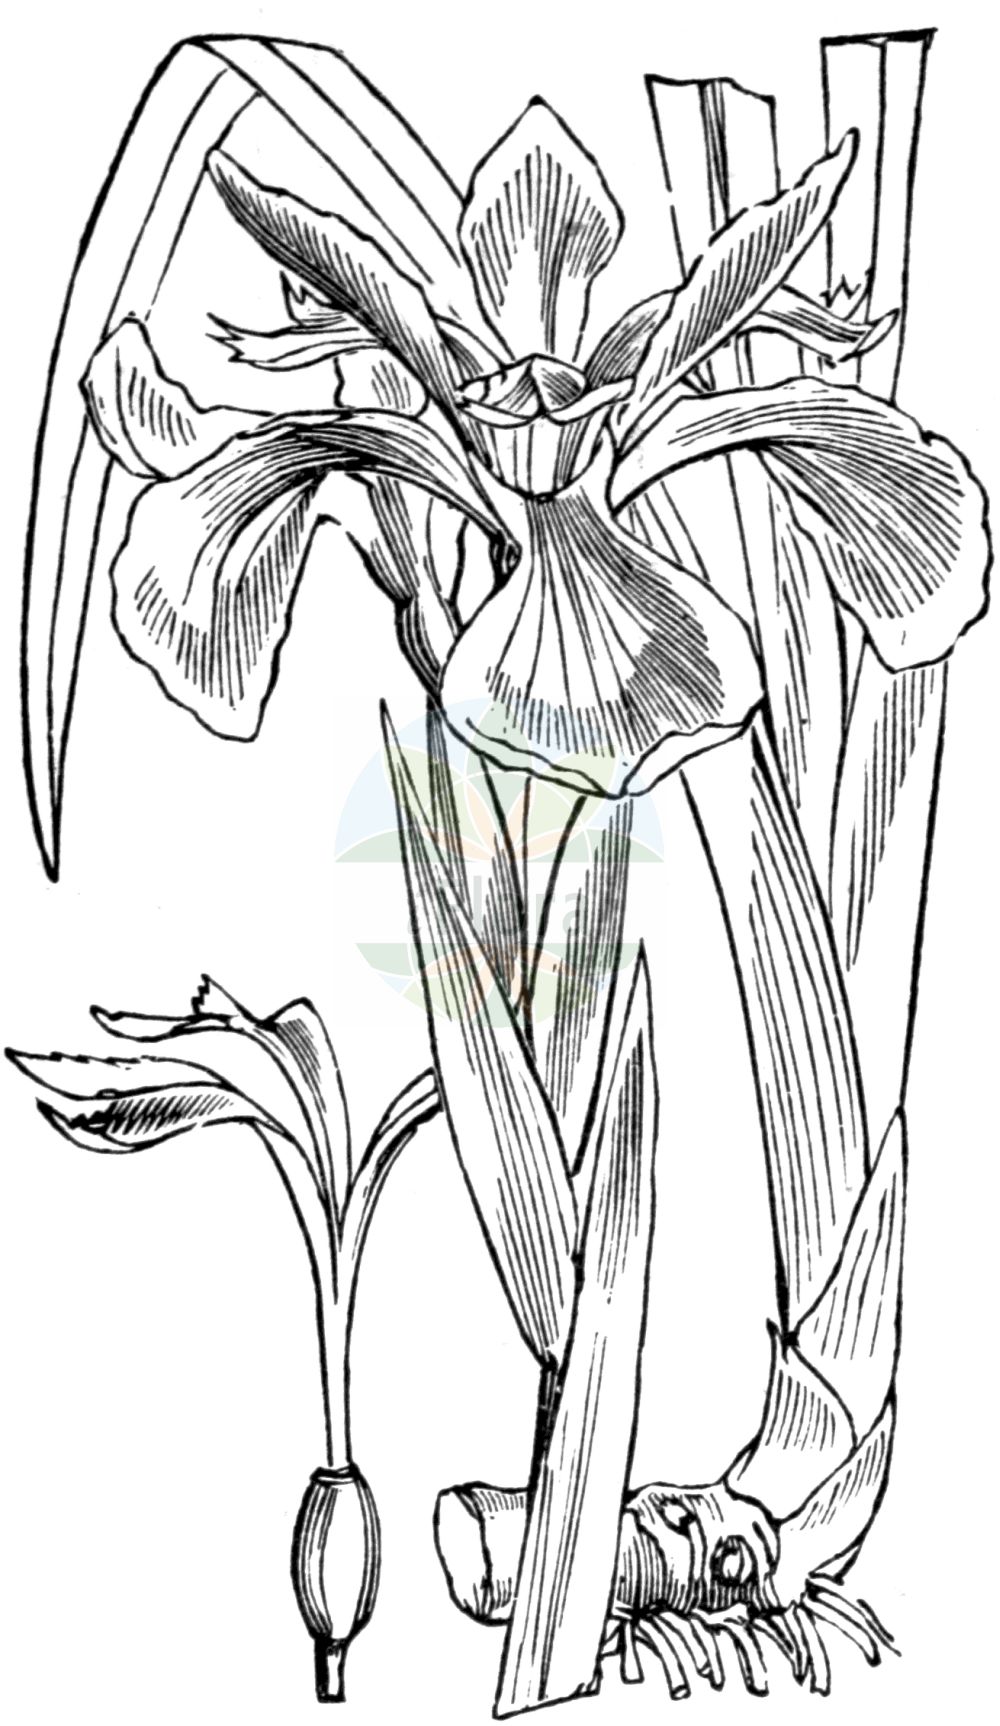 Historische Abbildung von Iris foetidissima (Stinking Iris). Das Bild zeigt Blatt, Bluete, Frucht und Same. ---- Historical Drawing of Iris foetidissima (Stinking Iris). The image is showing leaf, flower, fruit and seed.(Iris foetidissima,Stinking Iris,Chamaeiris foetida,Iris foetida,Iris foetidissima,Spathula foetidissima,Xiphion foetidissimum,Xyridion foetidissimum,Iris,Schwertlilie,Iris,Iridaceae,Schwertliliengewächse,Iris family,Blatt,Bluete,Frucht,Same,leaf,flower,fruit,seed,Fitch et al. (1880))